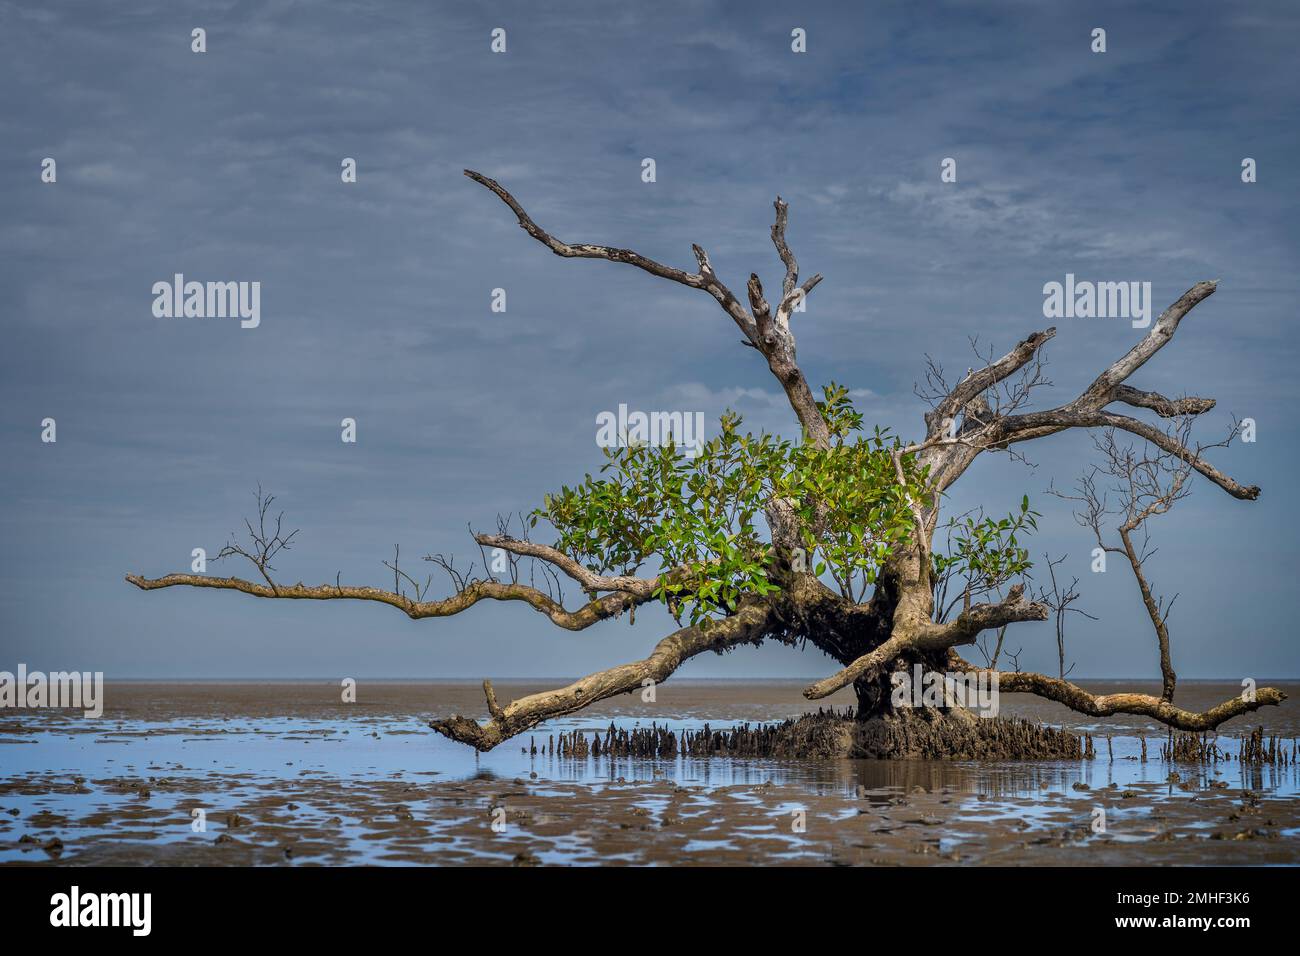 Manglar gris simple (Avicennia marina) que muestra raíces similares a la clavija en el plano arenoso en la marea baja. Hervey Bay, Queensland, Australia Foto de stock